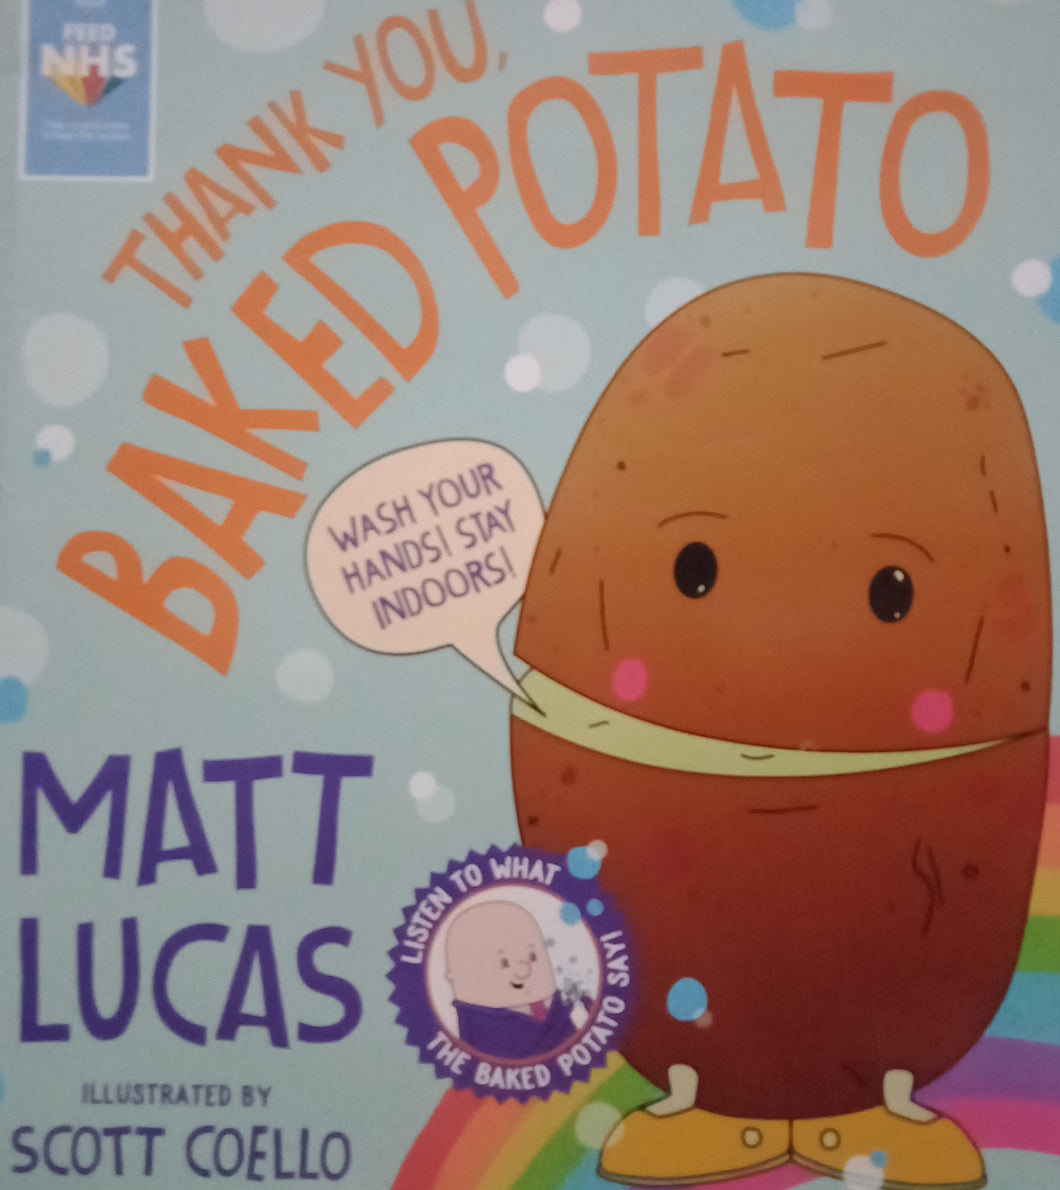 Thank You, Baked Potato by Matt Lucas